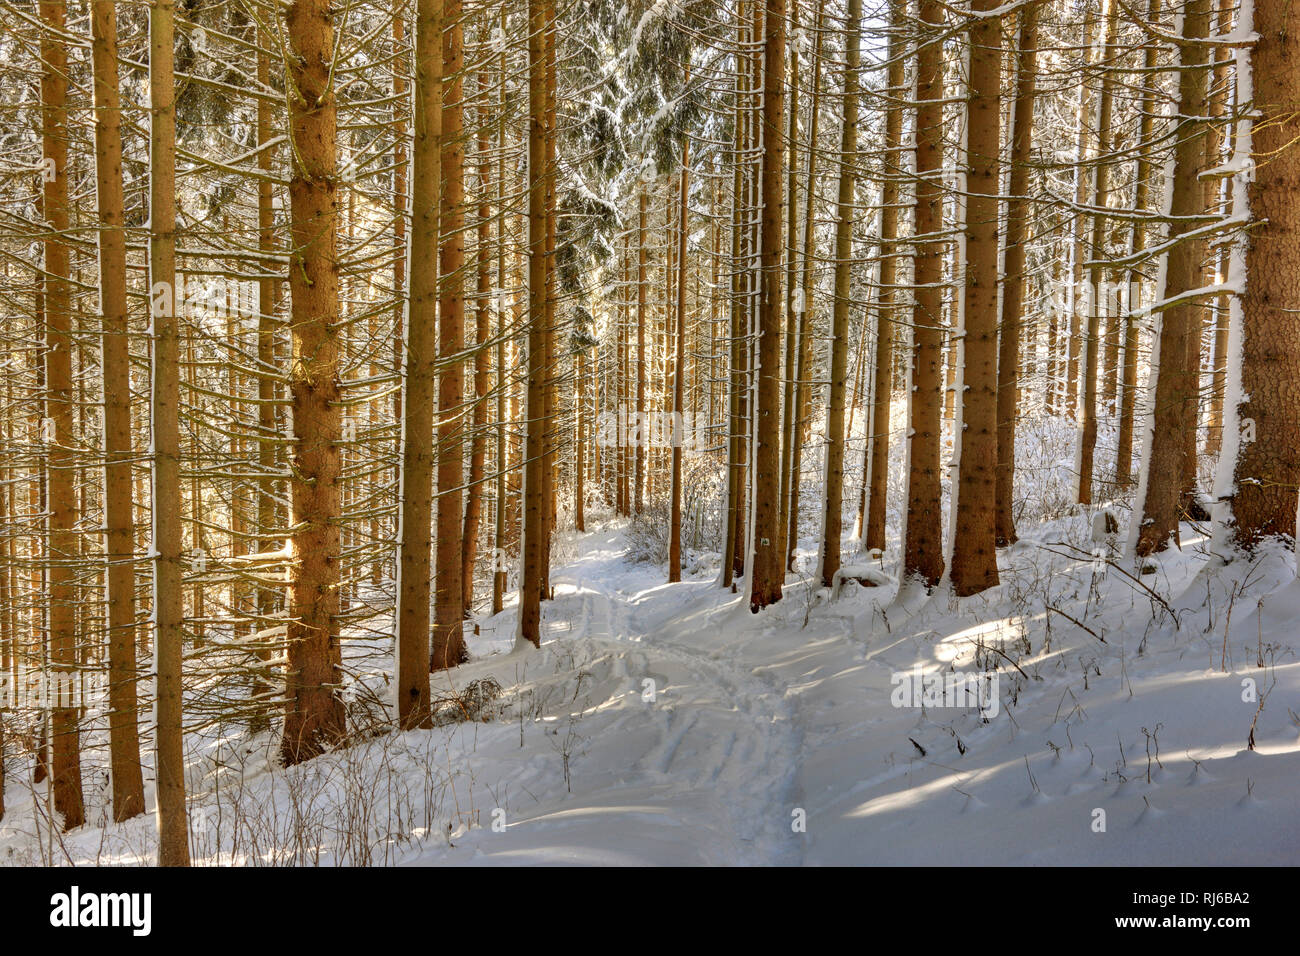 Deutschland, Thüringen, Gehren, Wald, Bäume, Schnee Foto Stock